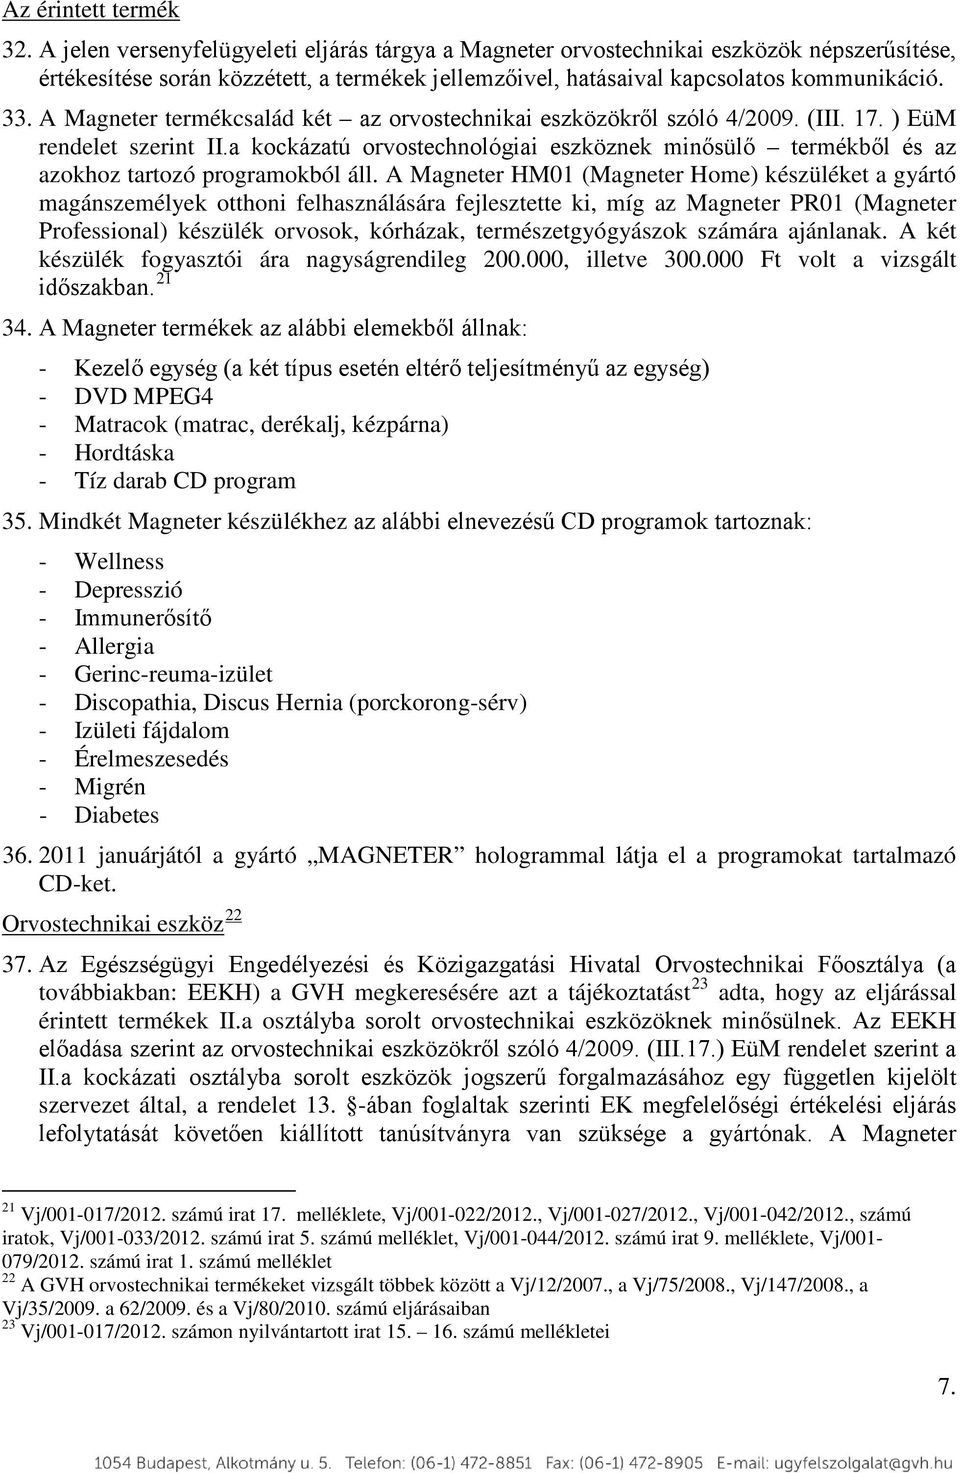 A Magneter termékcsalád két az orvostechnikai eszközökről szóló 4/2009. (III. 17. ) EüM rendelet szerint II.